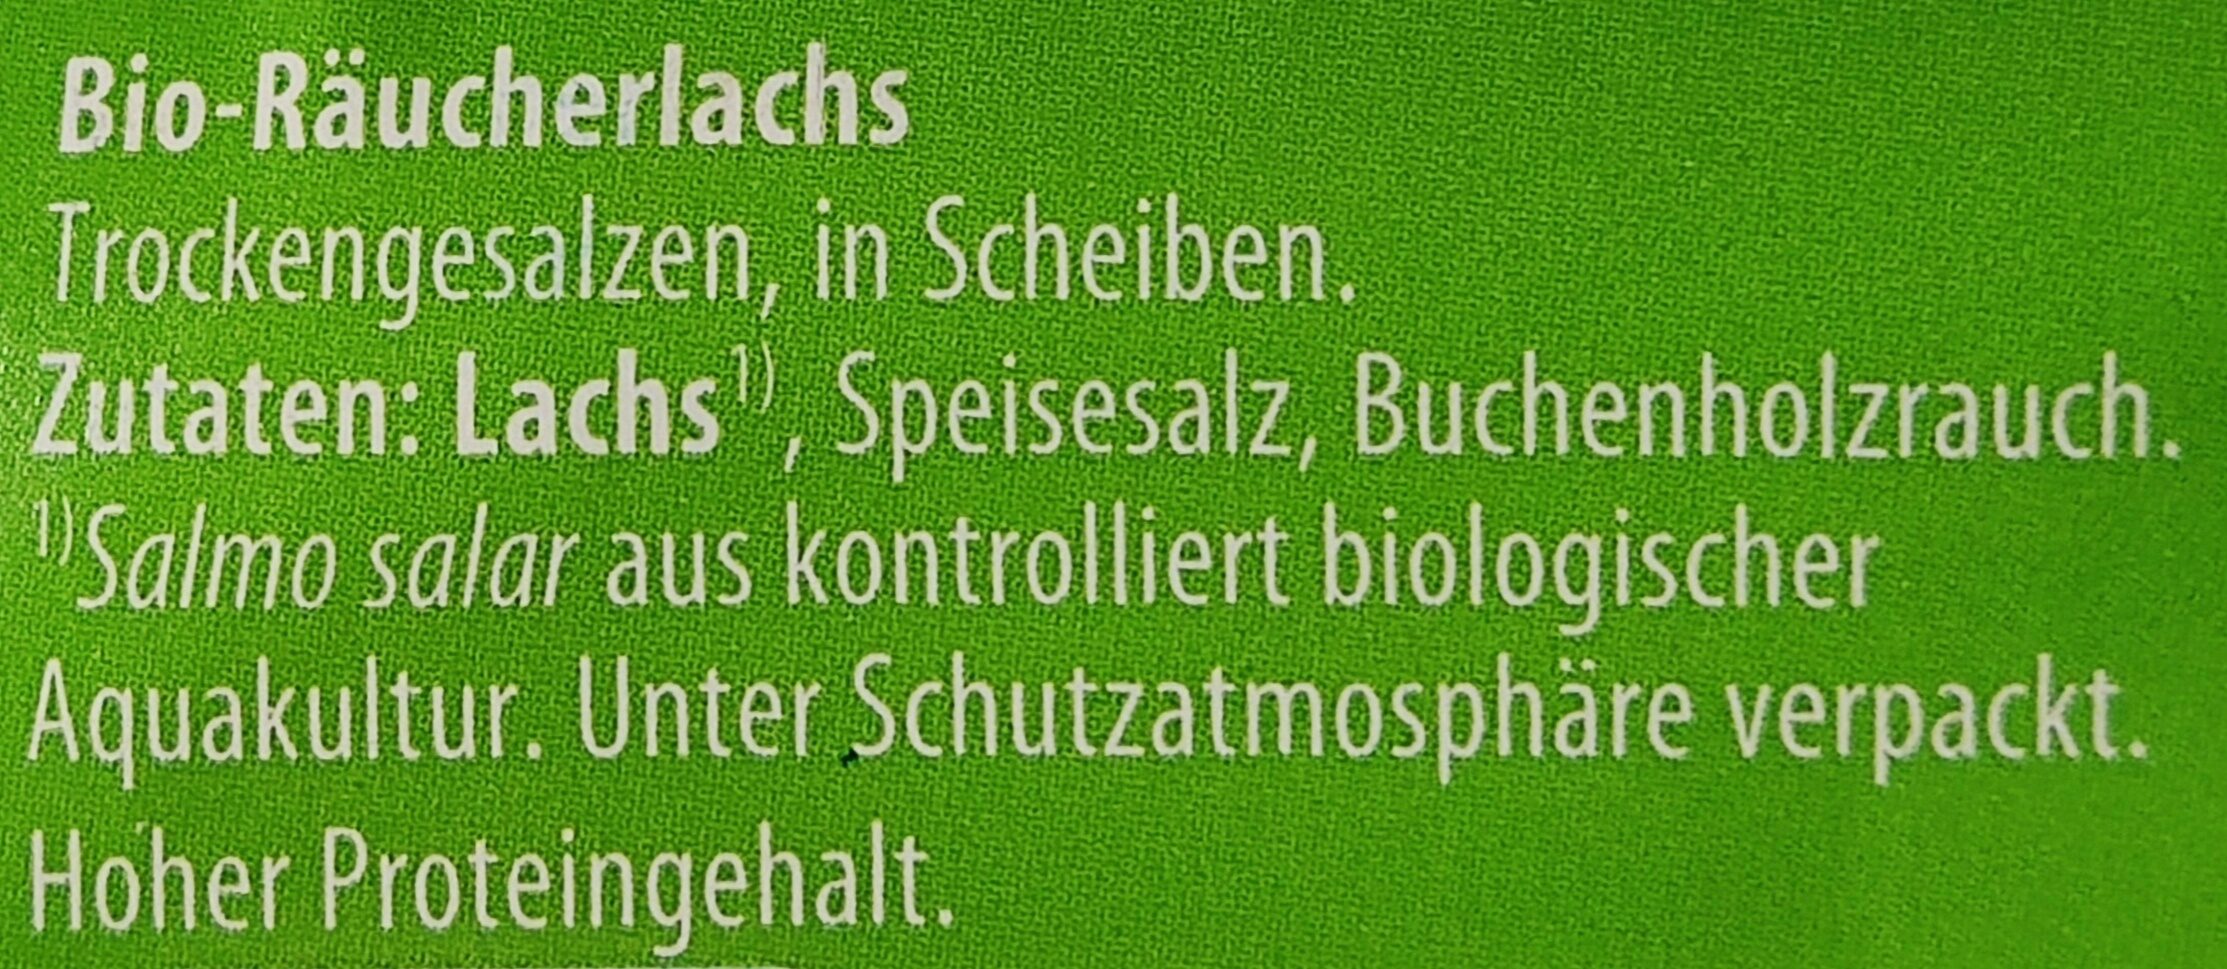 Bio-Räucherlachs - Zutaten